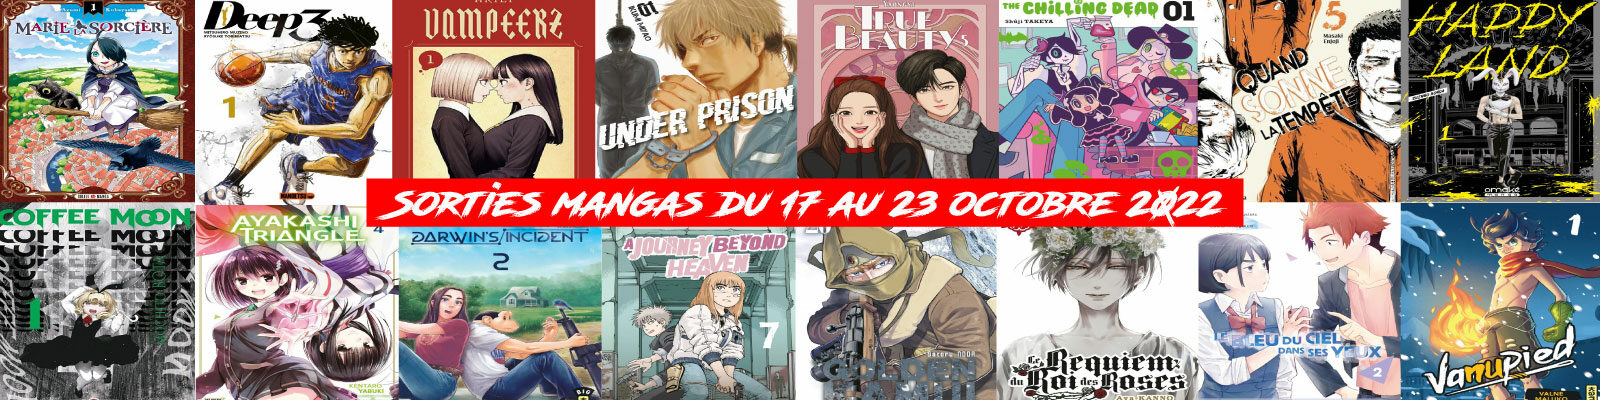 Sorties mangas-du-17-au-23-octobre-2022-2